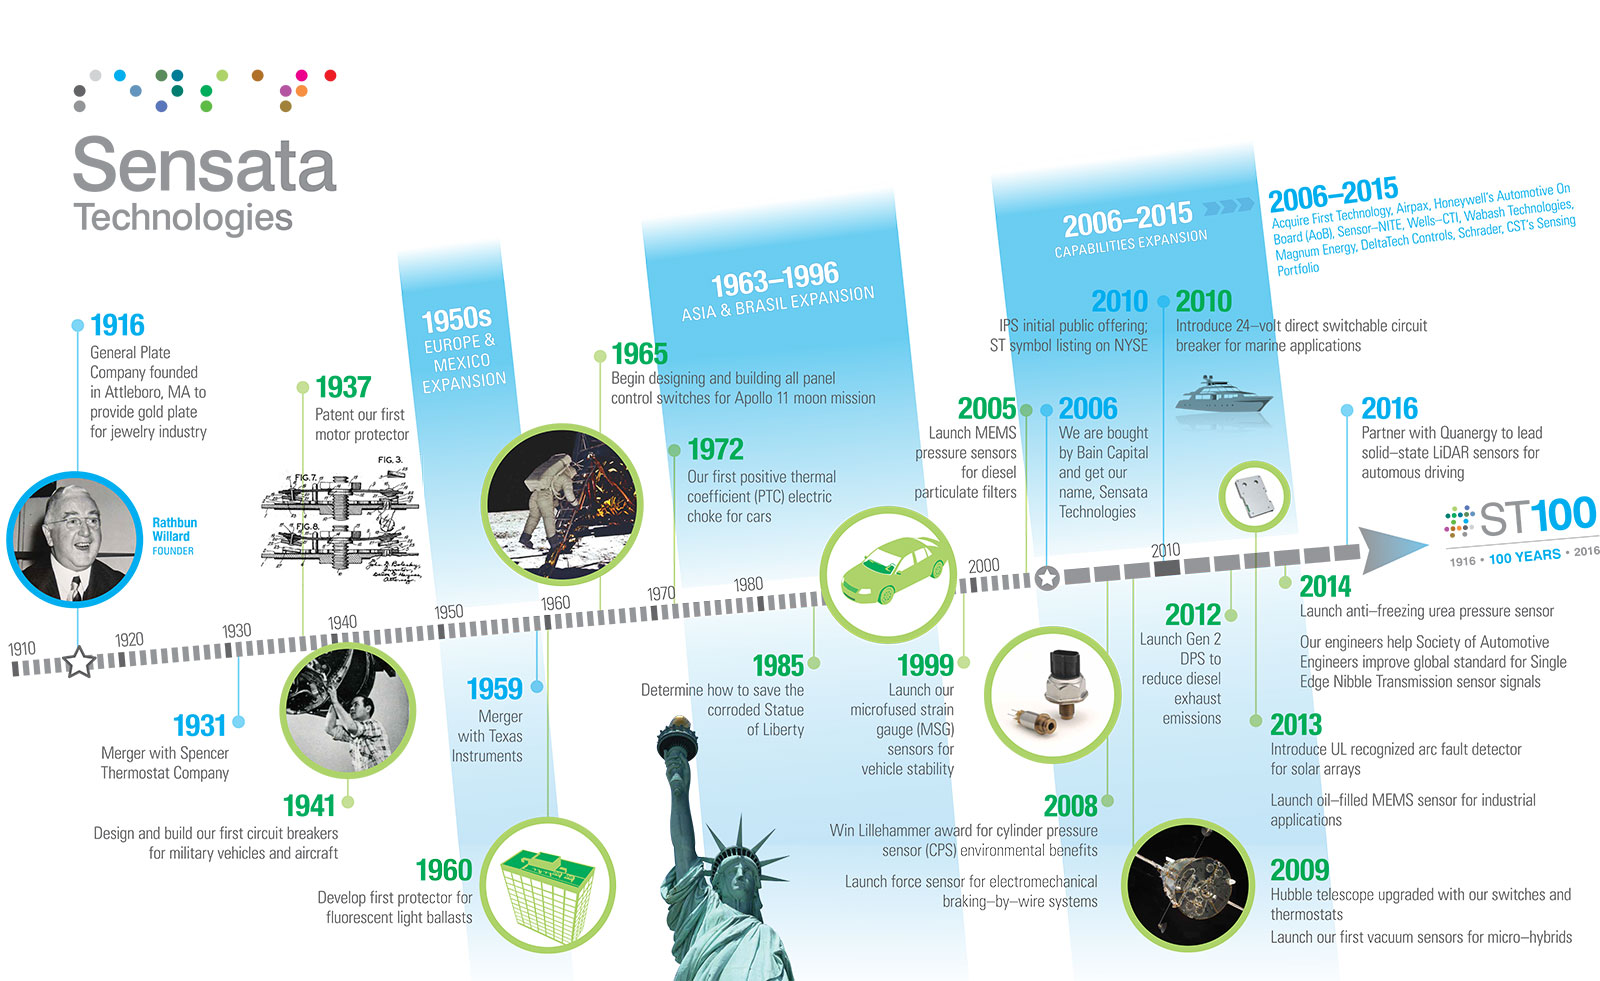 Geschichte von Sensata Technologies